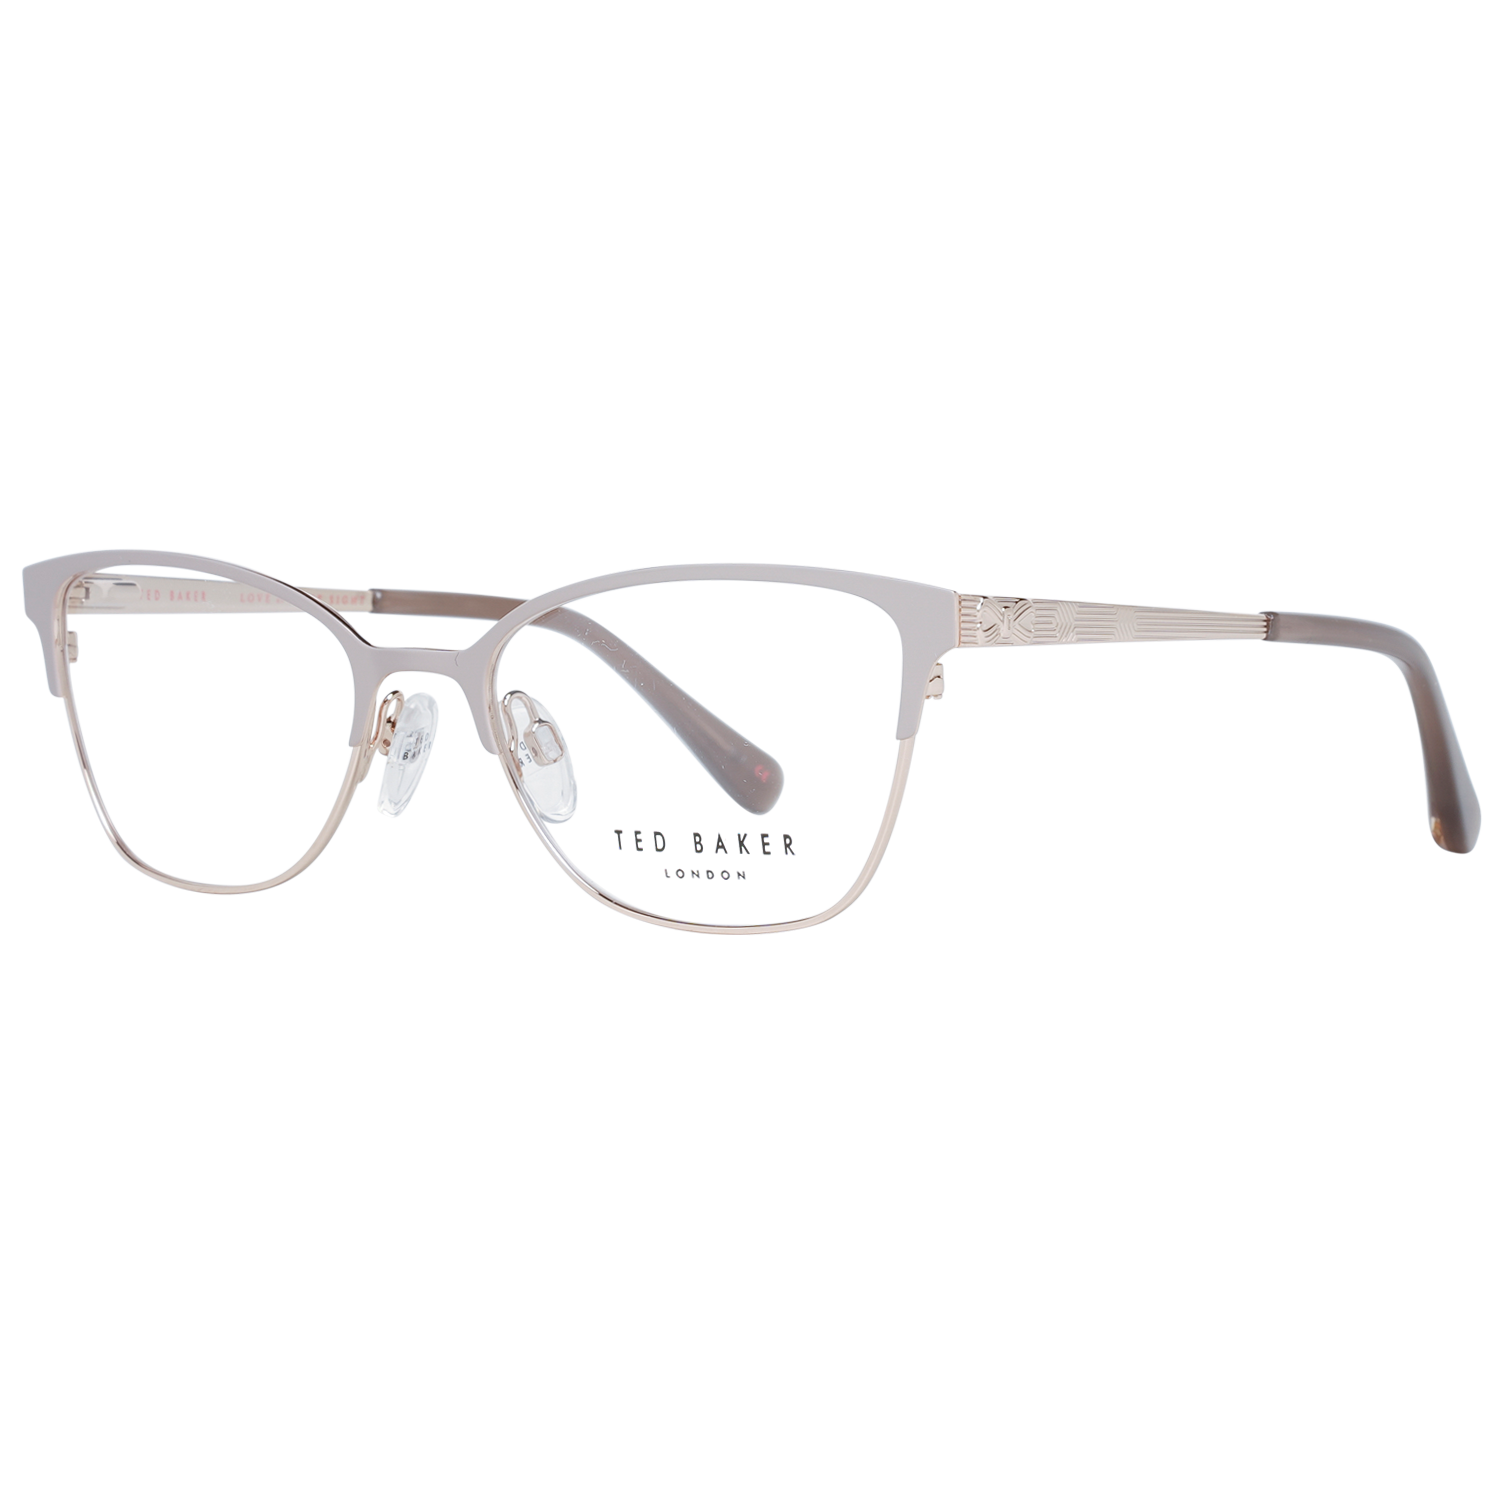 Ted Baker Frames Ted Baker Prescription Glasses Optical Frame TB2241 905 51 Eyeglasses Eyewear UK USA Australia 